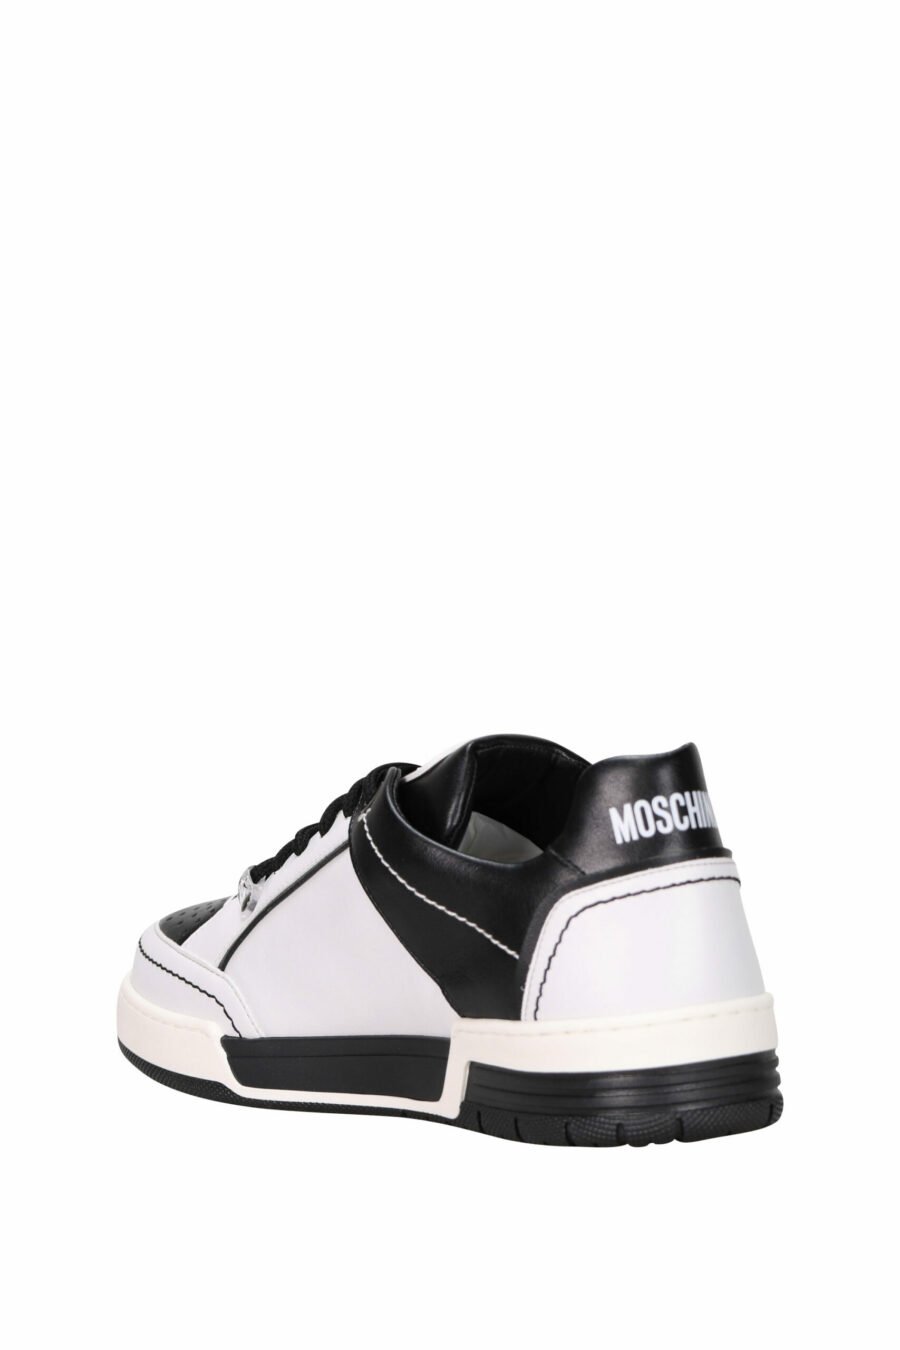 Zapatillas blancas con negras mix "kevin40" con minilogo - 8054388221115 3 scaled